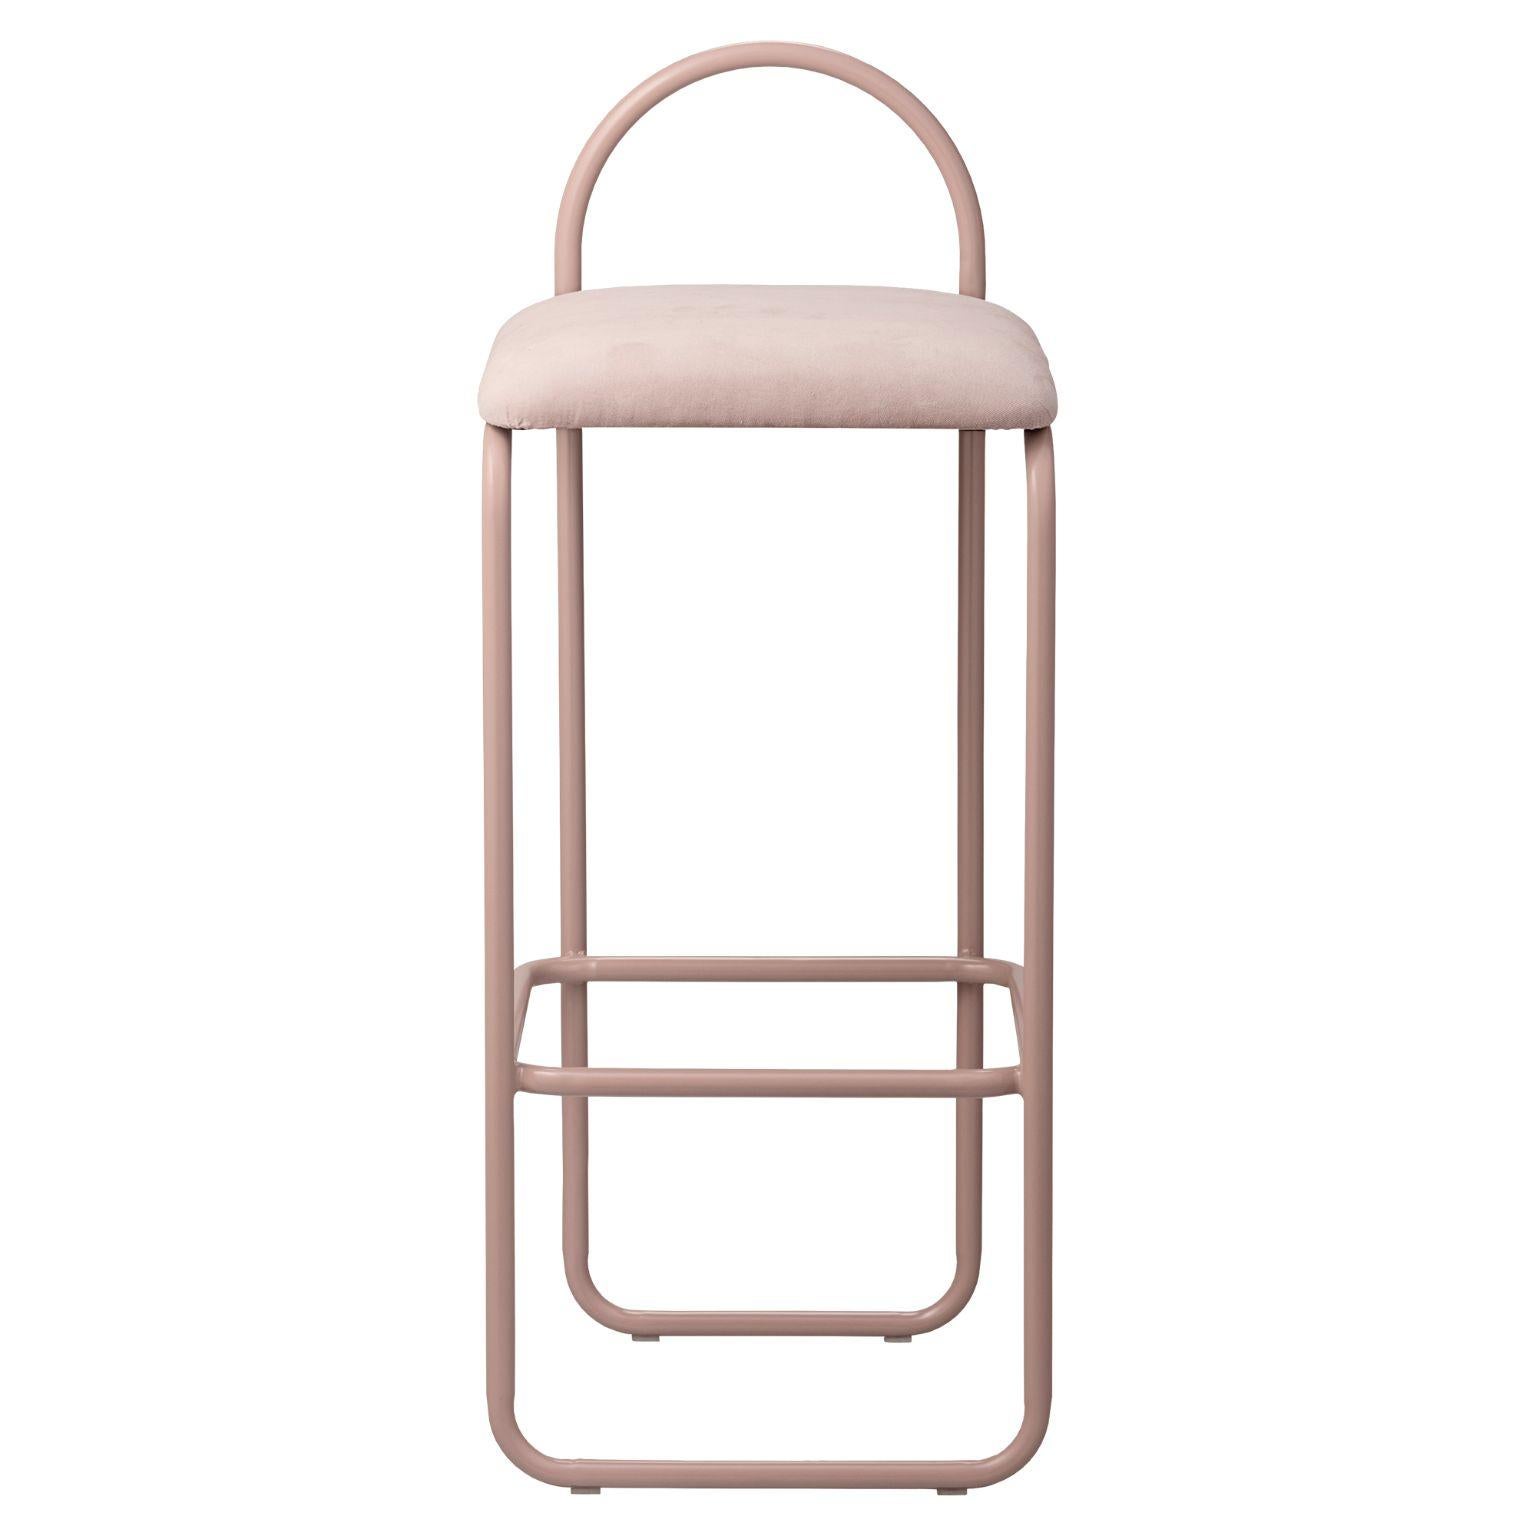 Rose velvet minimalist bar chair 82.5
Dimensions: L 37 x W 39 x H 82.5 cm
Materials: Velvet, steel.

     